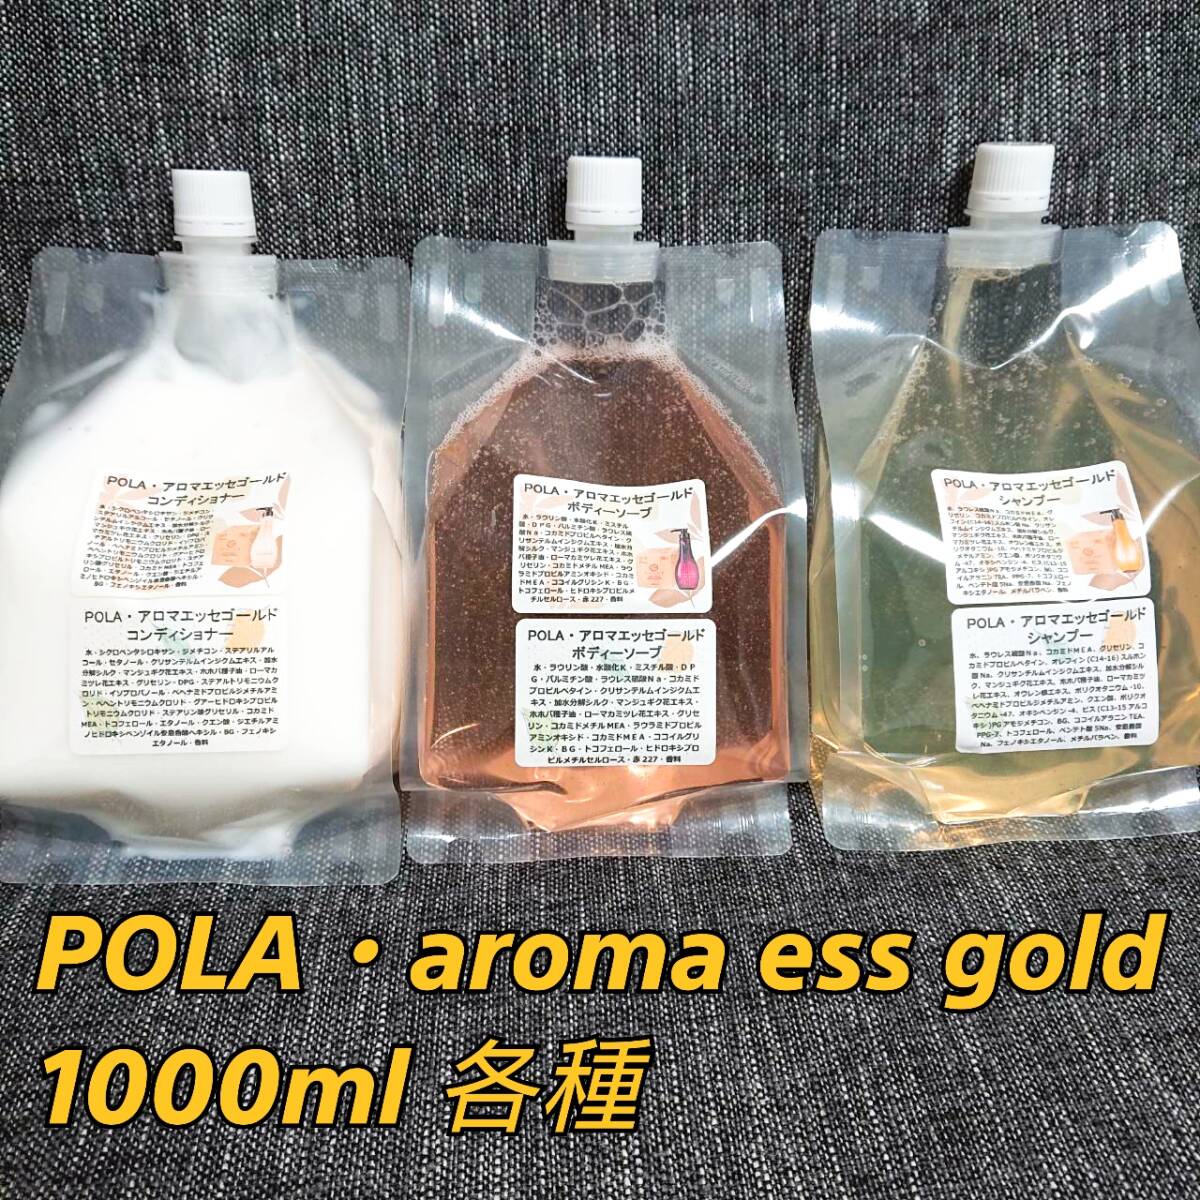  Pola * aroma Esse Gold для заполнения pauchi1000ml×4 шт * включая доставку *